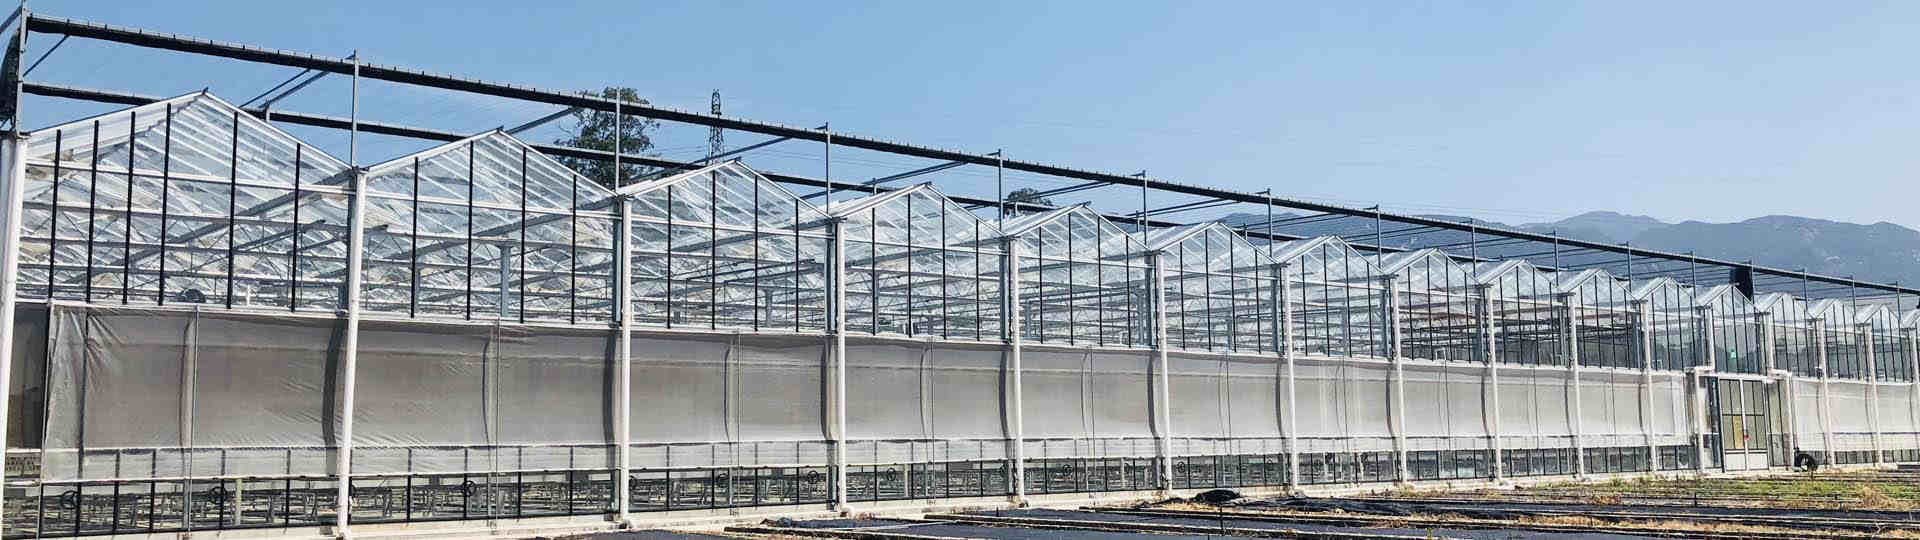 Multi-span Venlo glass greenhouse